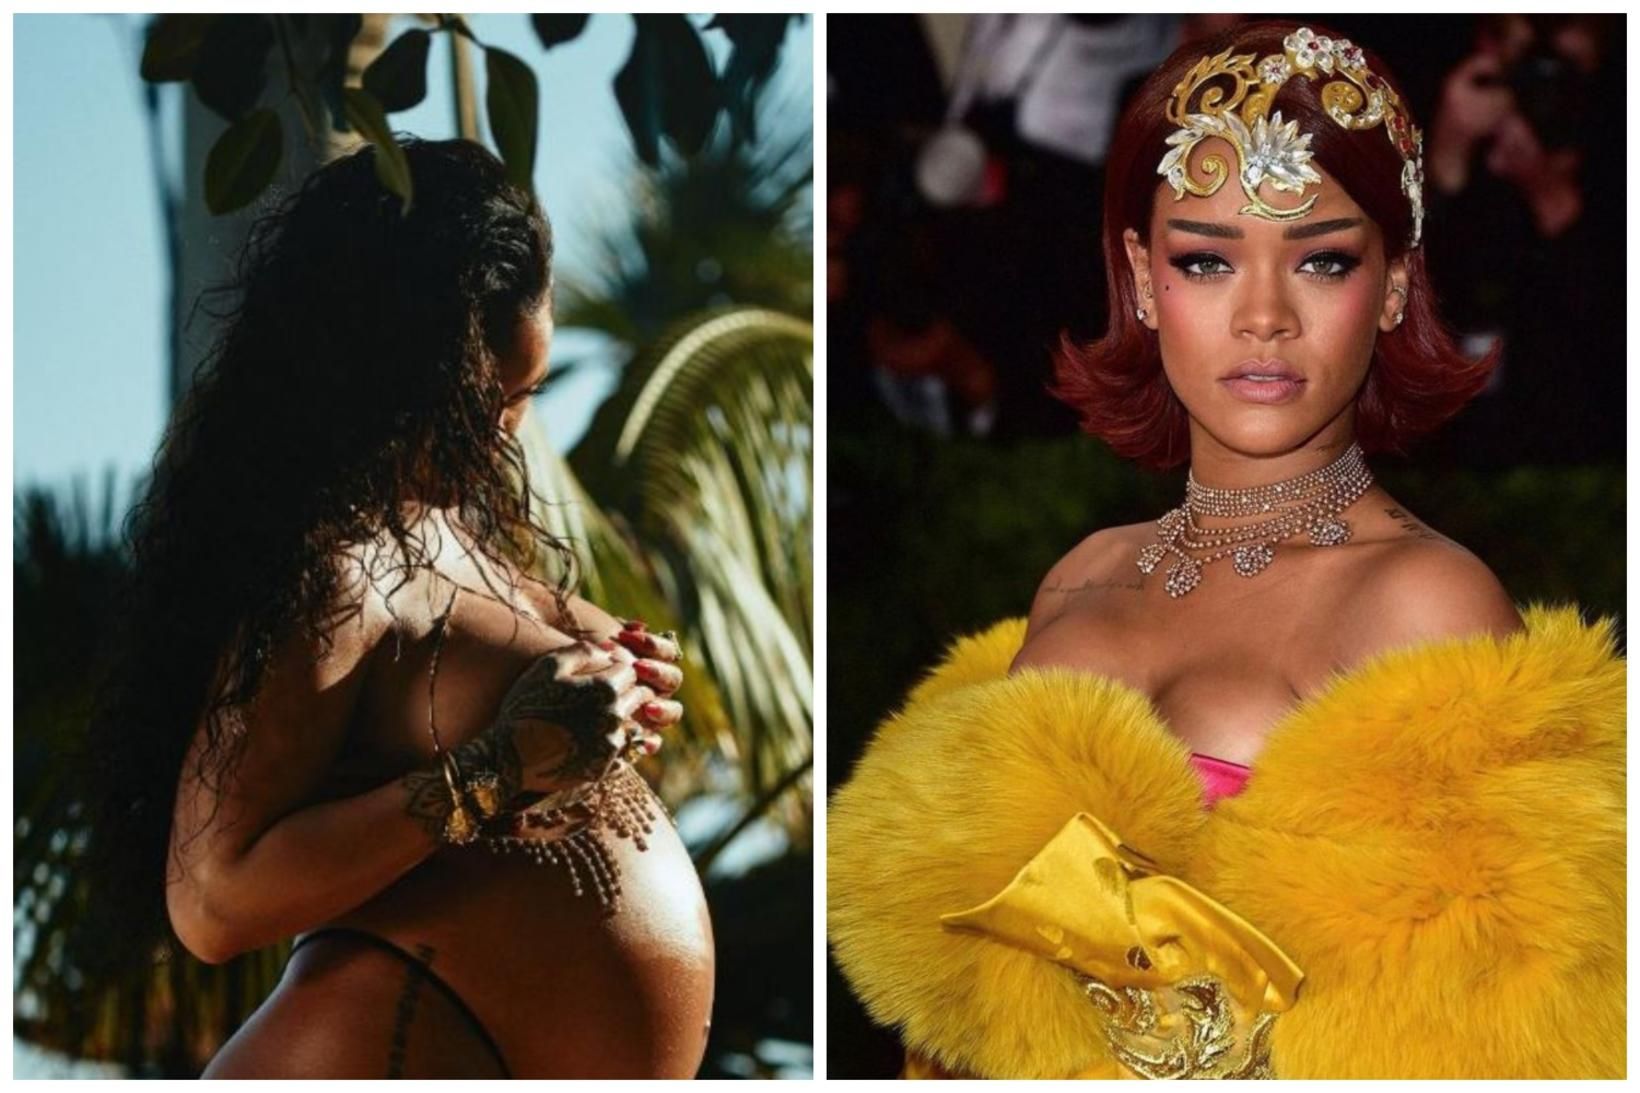 Tónlistarkonan Rihanna birti glæsilega myndaseríu á Instagram sem hefur vakið …